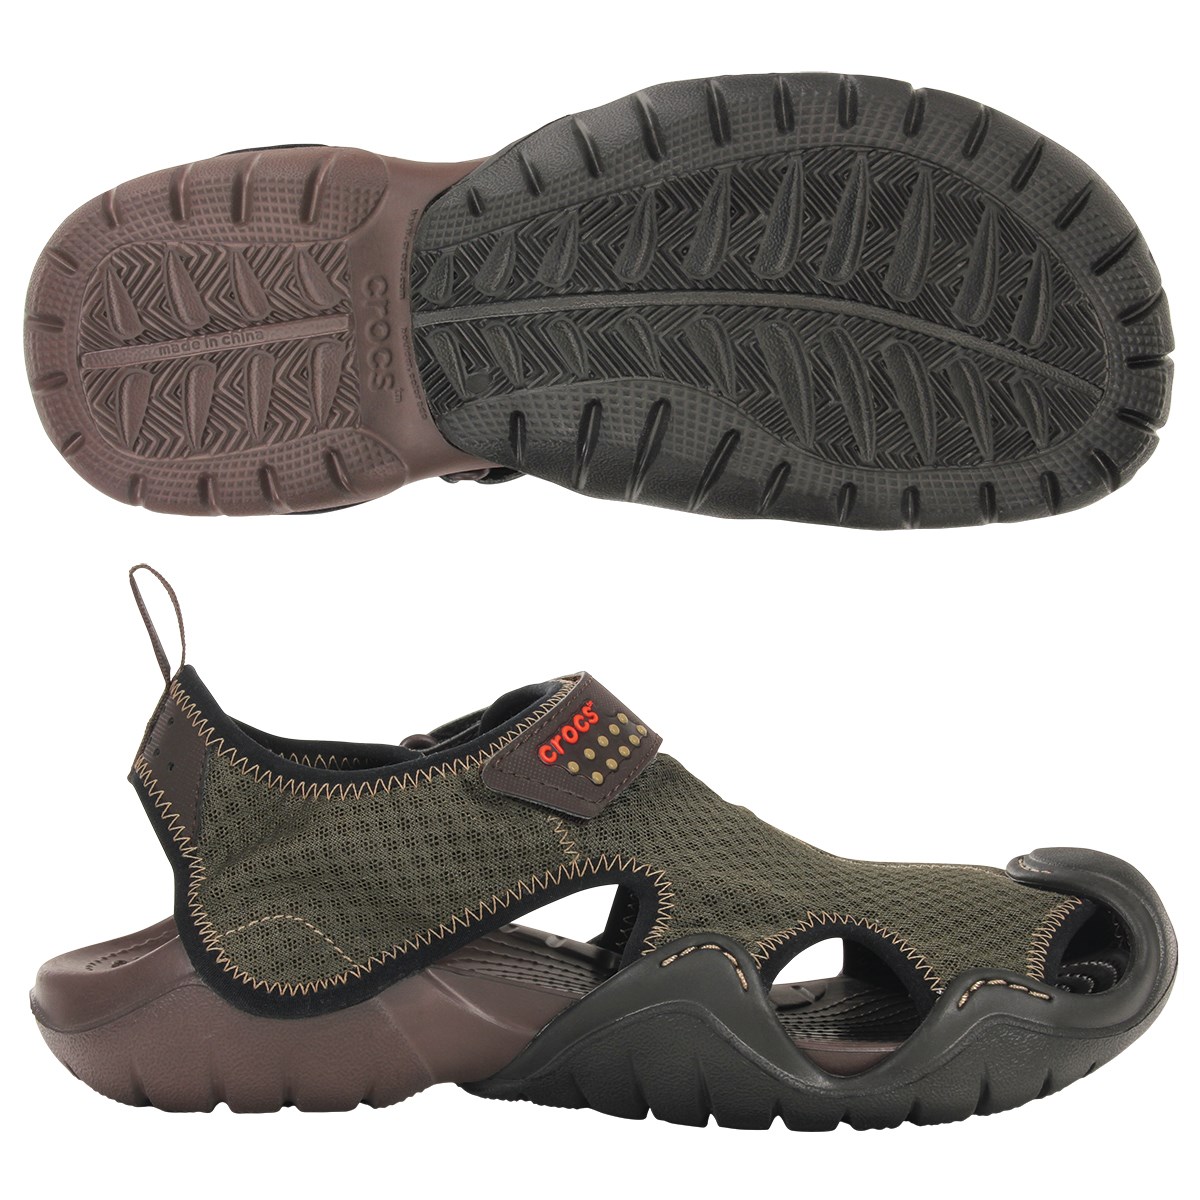 crocs hiking shoes